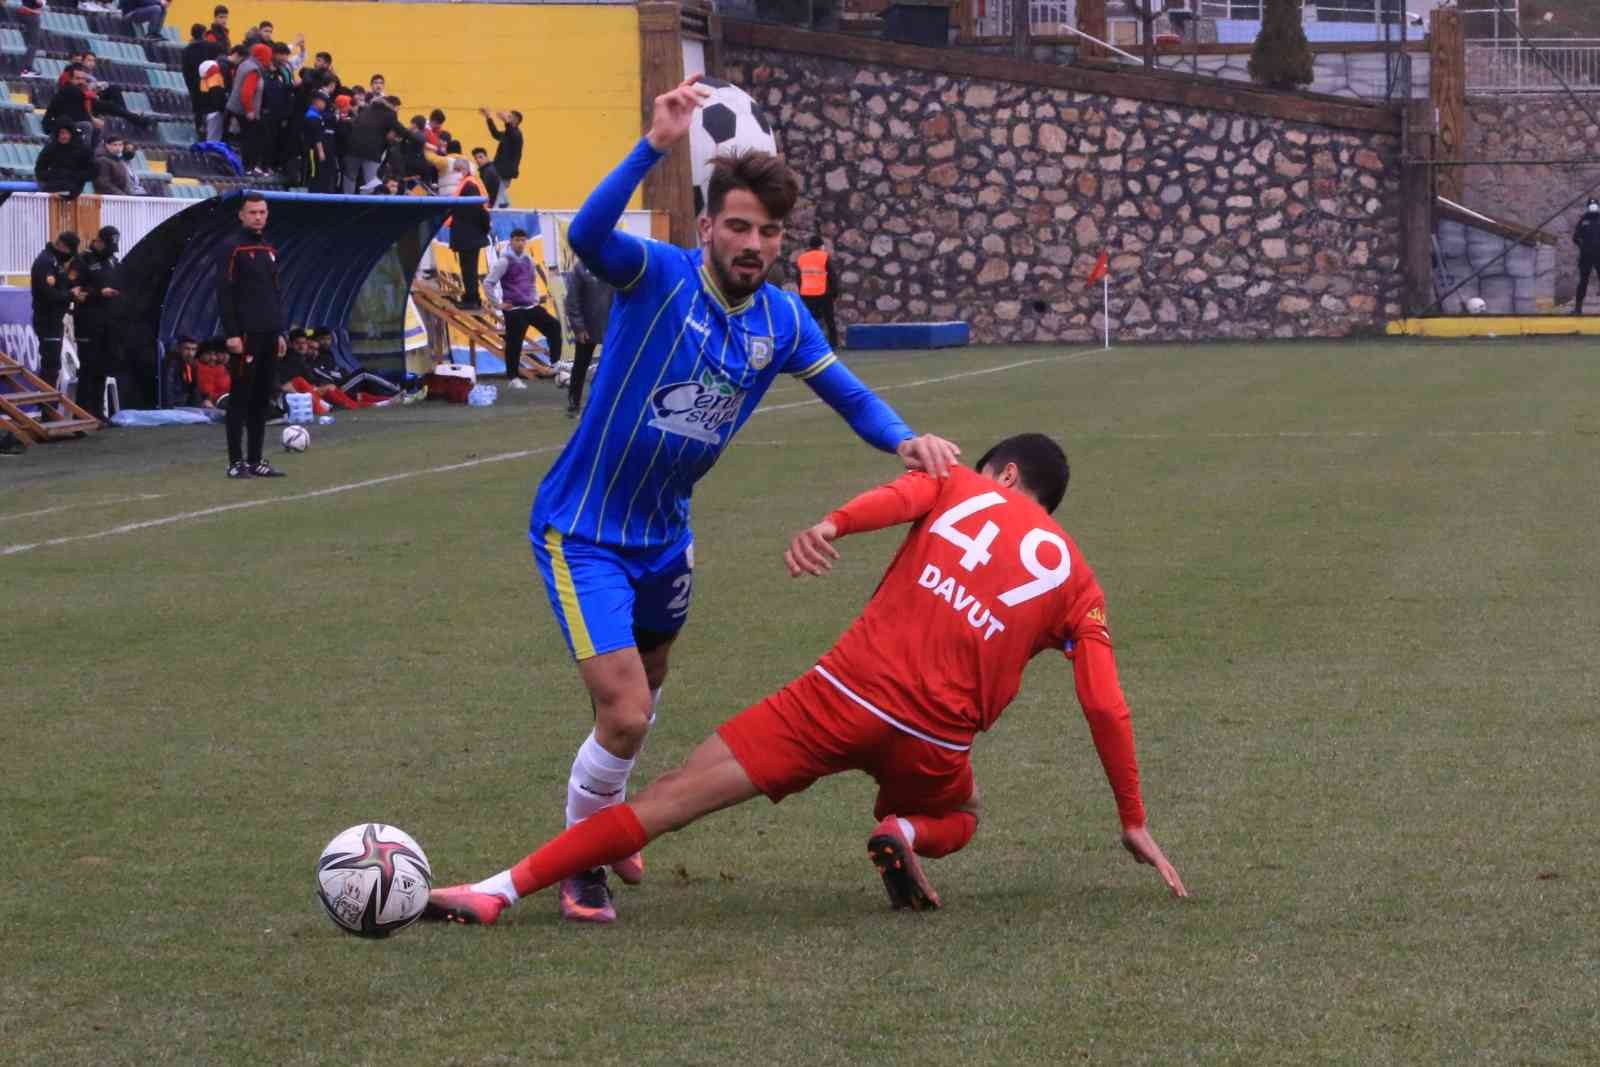 TFF 3. Lig 3. Grup 24. haftasında Belediye Derincespor sahasında karşılaştığı Kardemir Karabükspor’u 5-1 mağlup etti. Stat: Belediye Derincespor ...